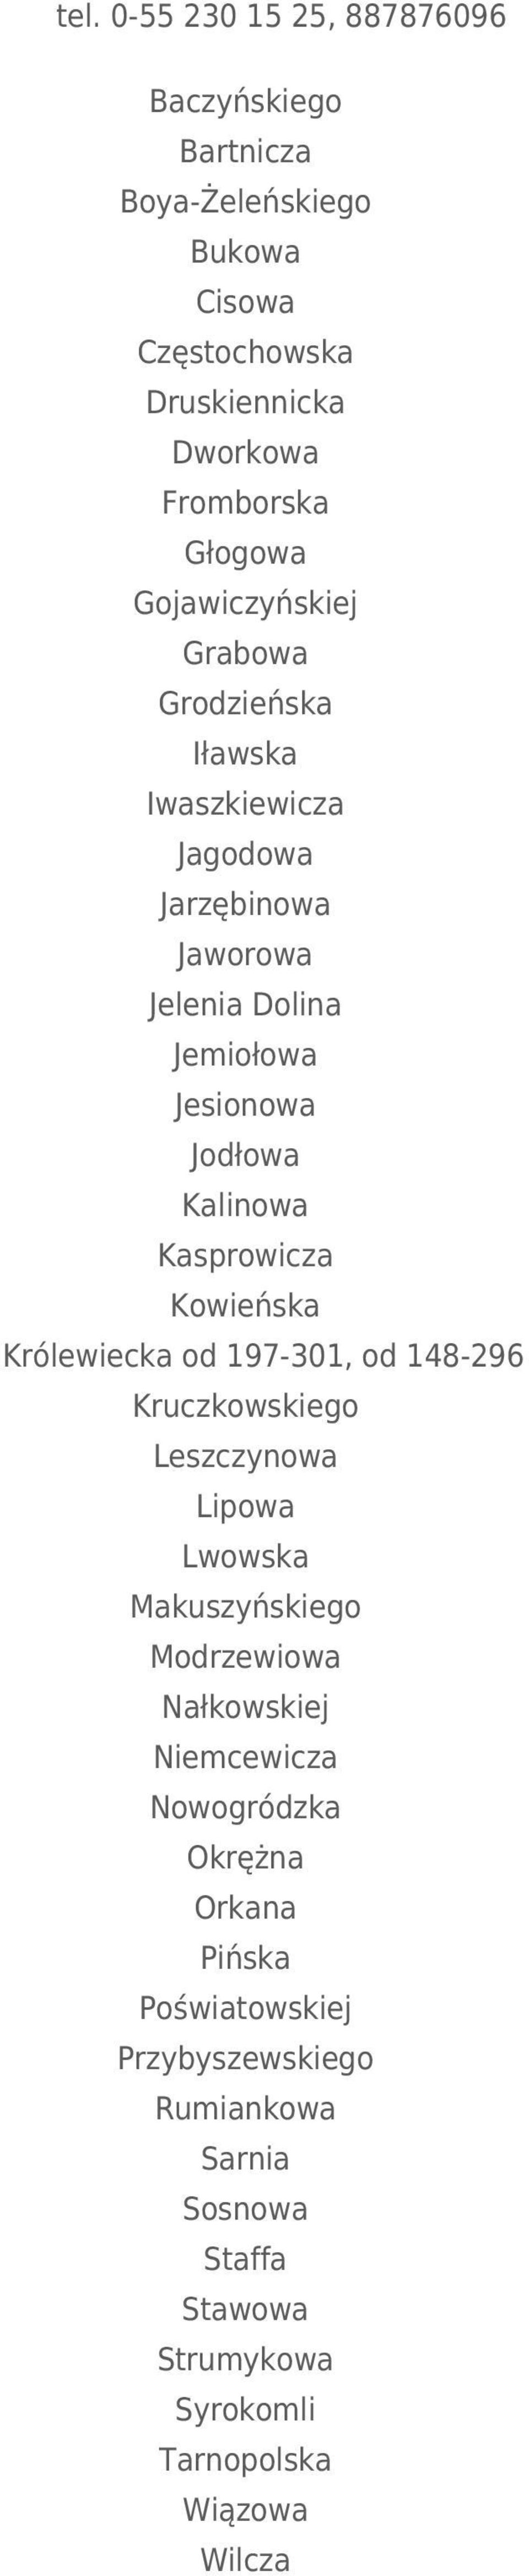 Kasprowicza Kowieńska Królewiecka od 197-301, od 148-296 Kruczkowskiego Leszczynowa Lipowa Lwowska Makuszyńskiego Modrzewiowa Nałkowskiej